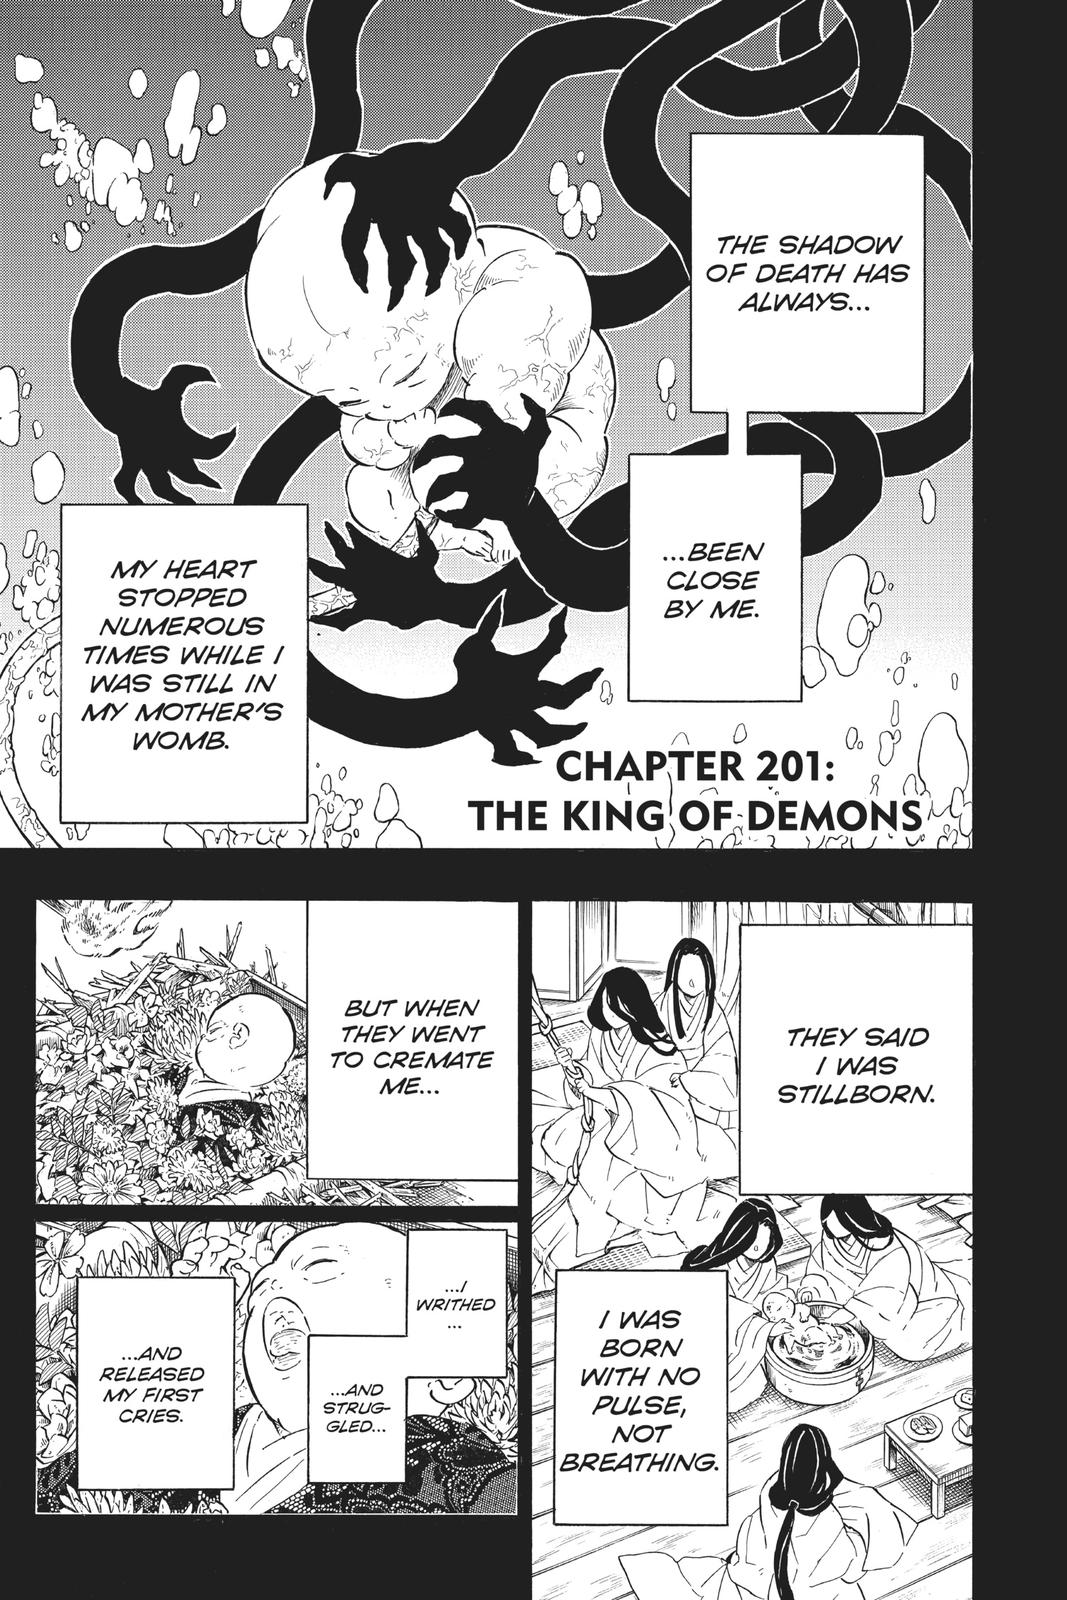 Demon Slayer - Kimetsu no Yaiba, Chapter 23 - Demon Slayer - Kimetsu no  Yaiba Manga Online